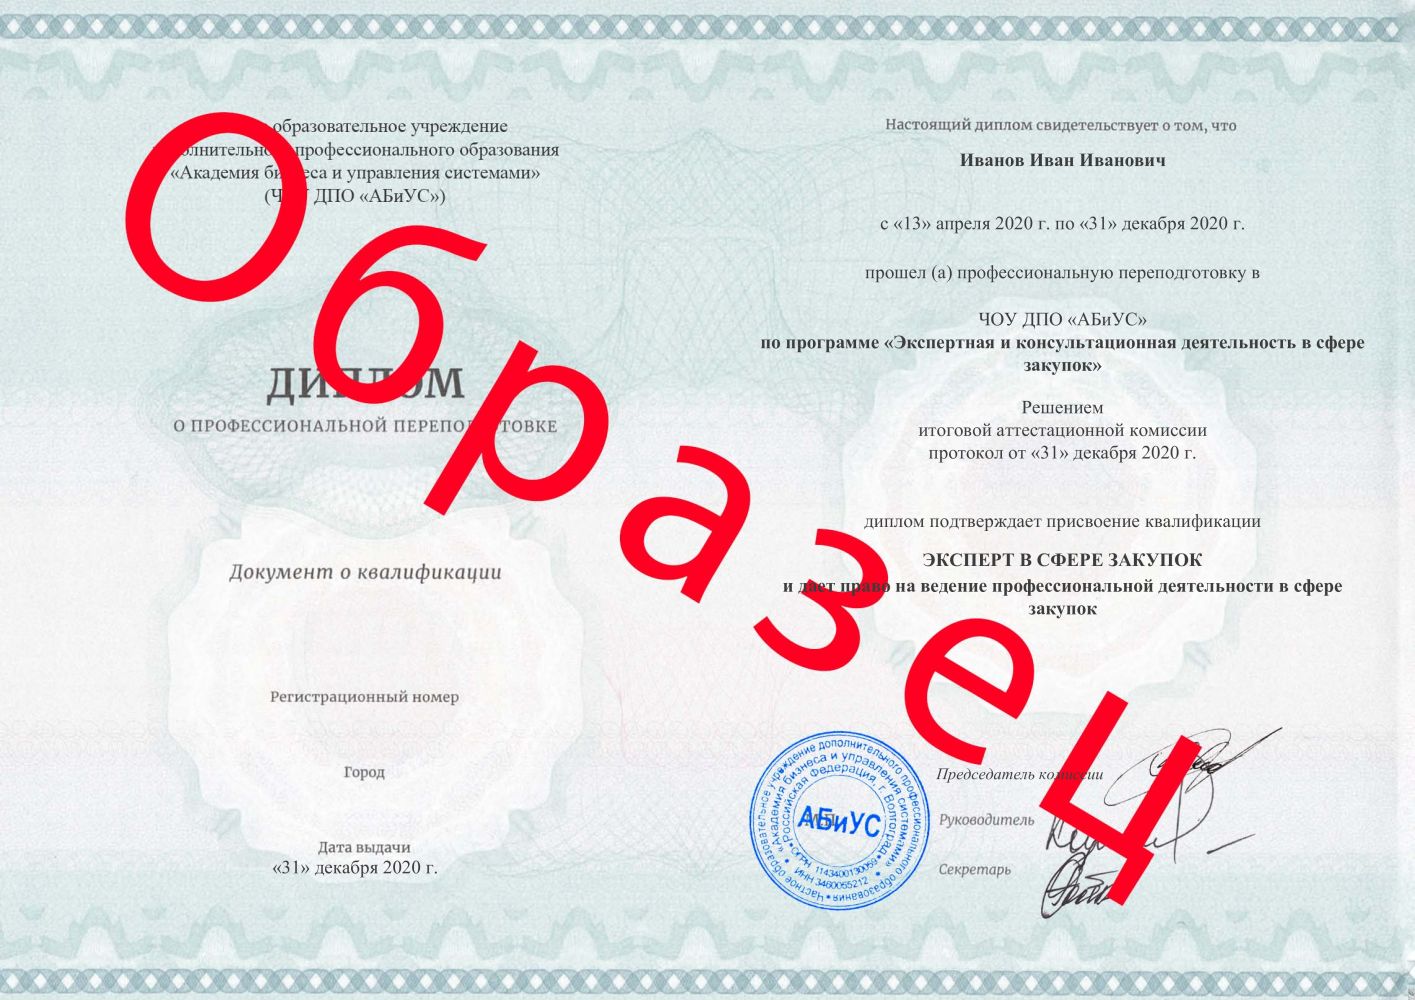 Диплом Экспертная и консультационная деятельность в сфере закупок 260 часов 9375 руб.